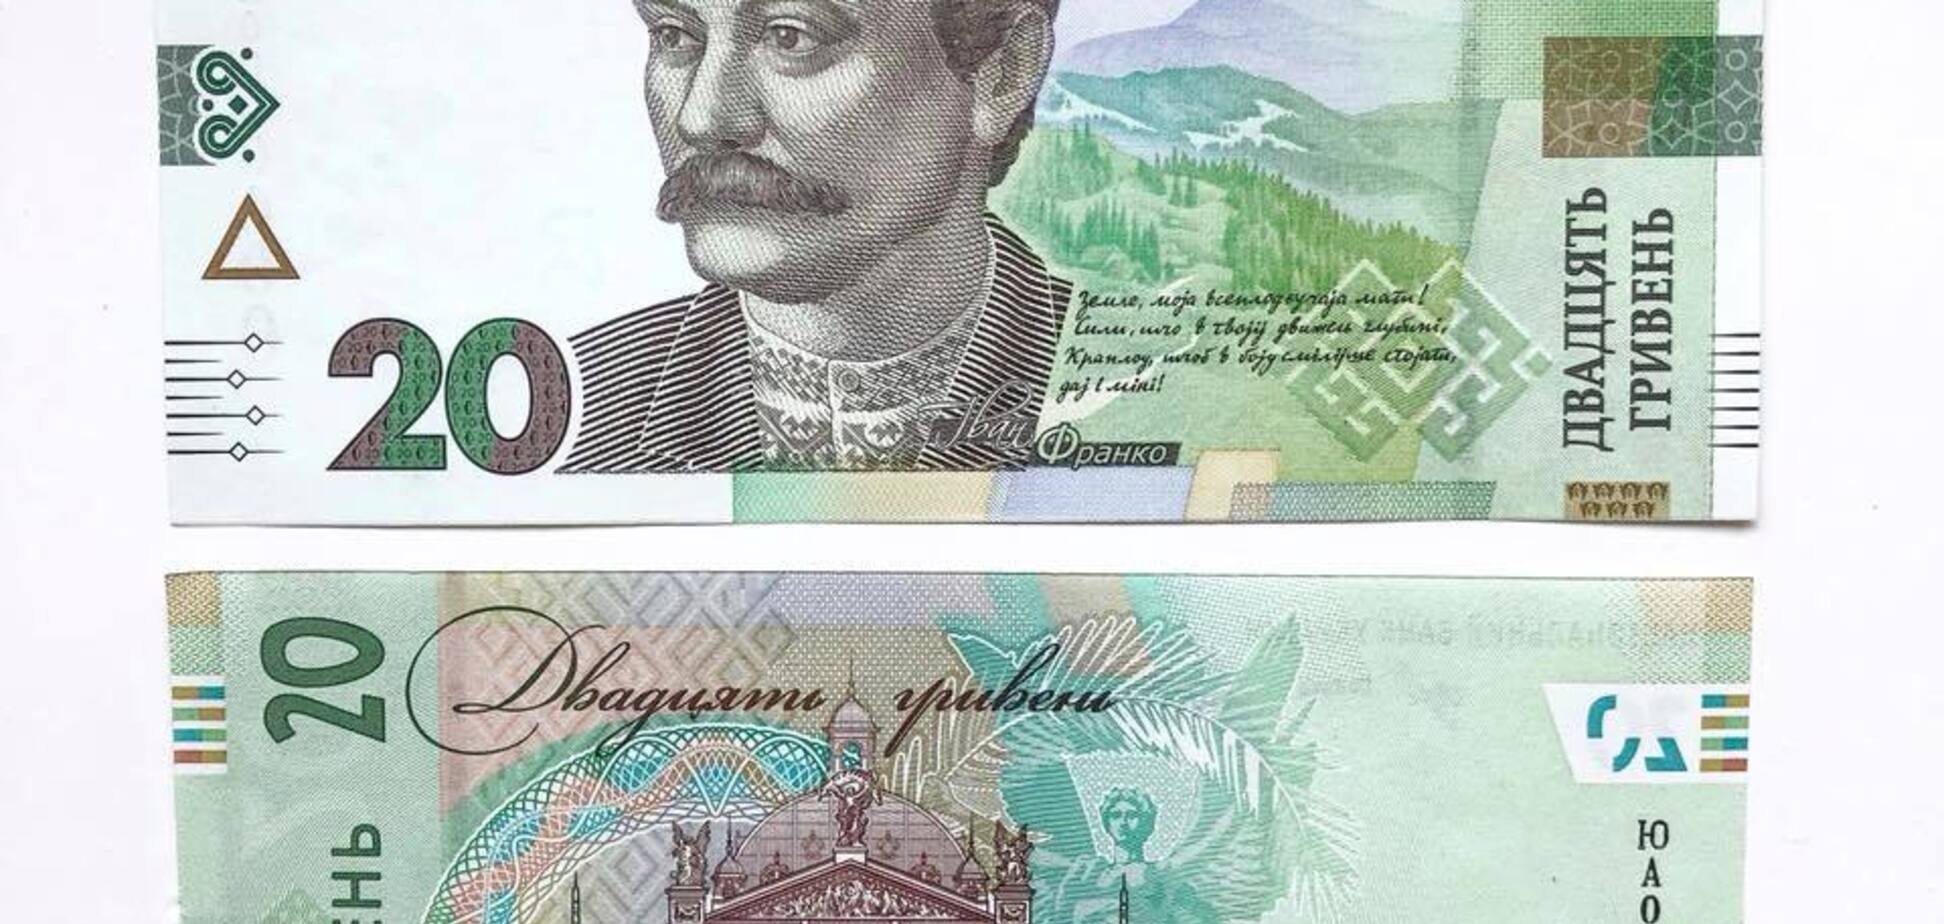 18 признаков: украинцам пояснили, как распознать фальшивые деньги